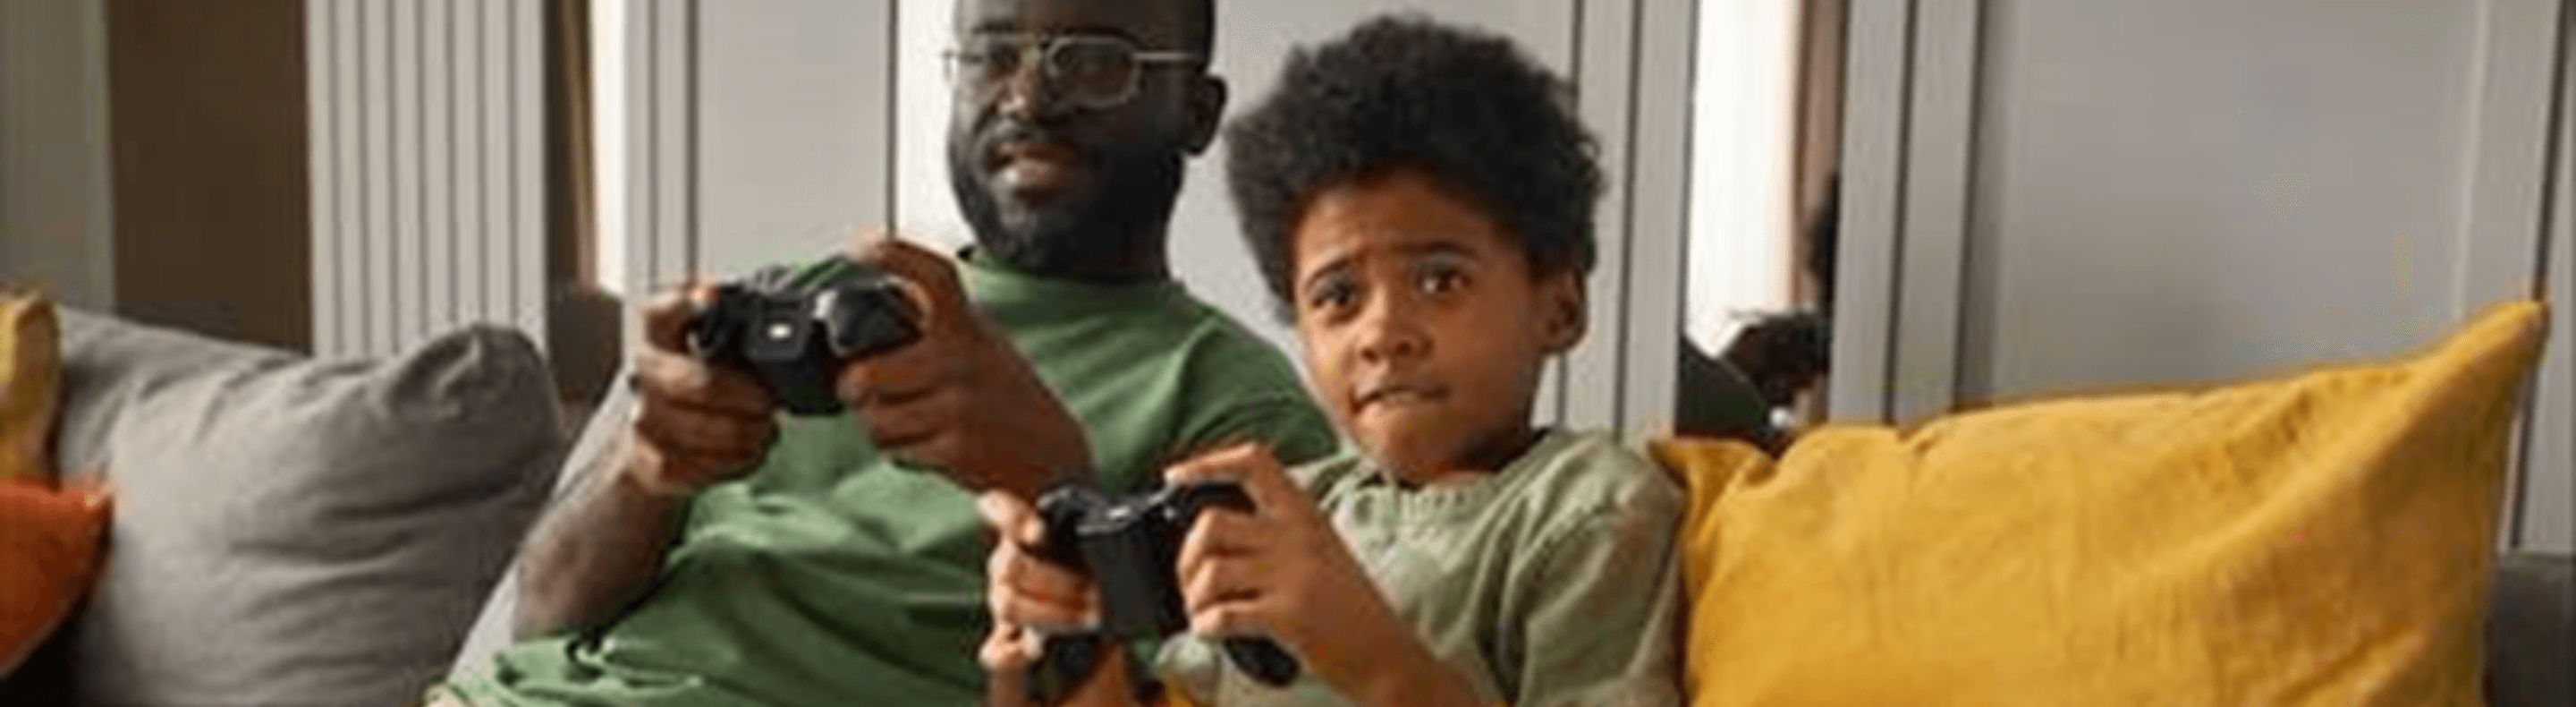 Pai e filho jogando videogame nas férias escolares